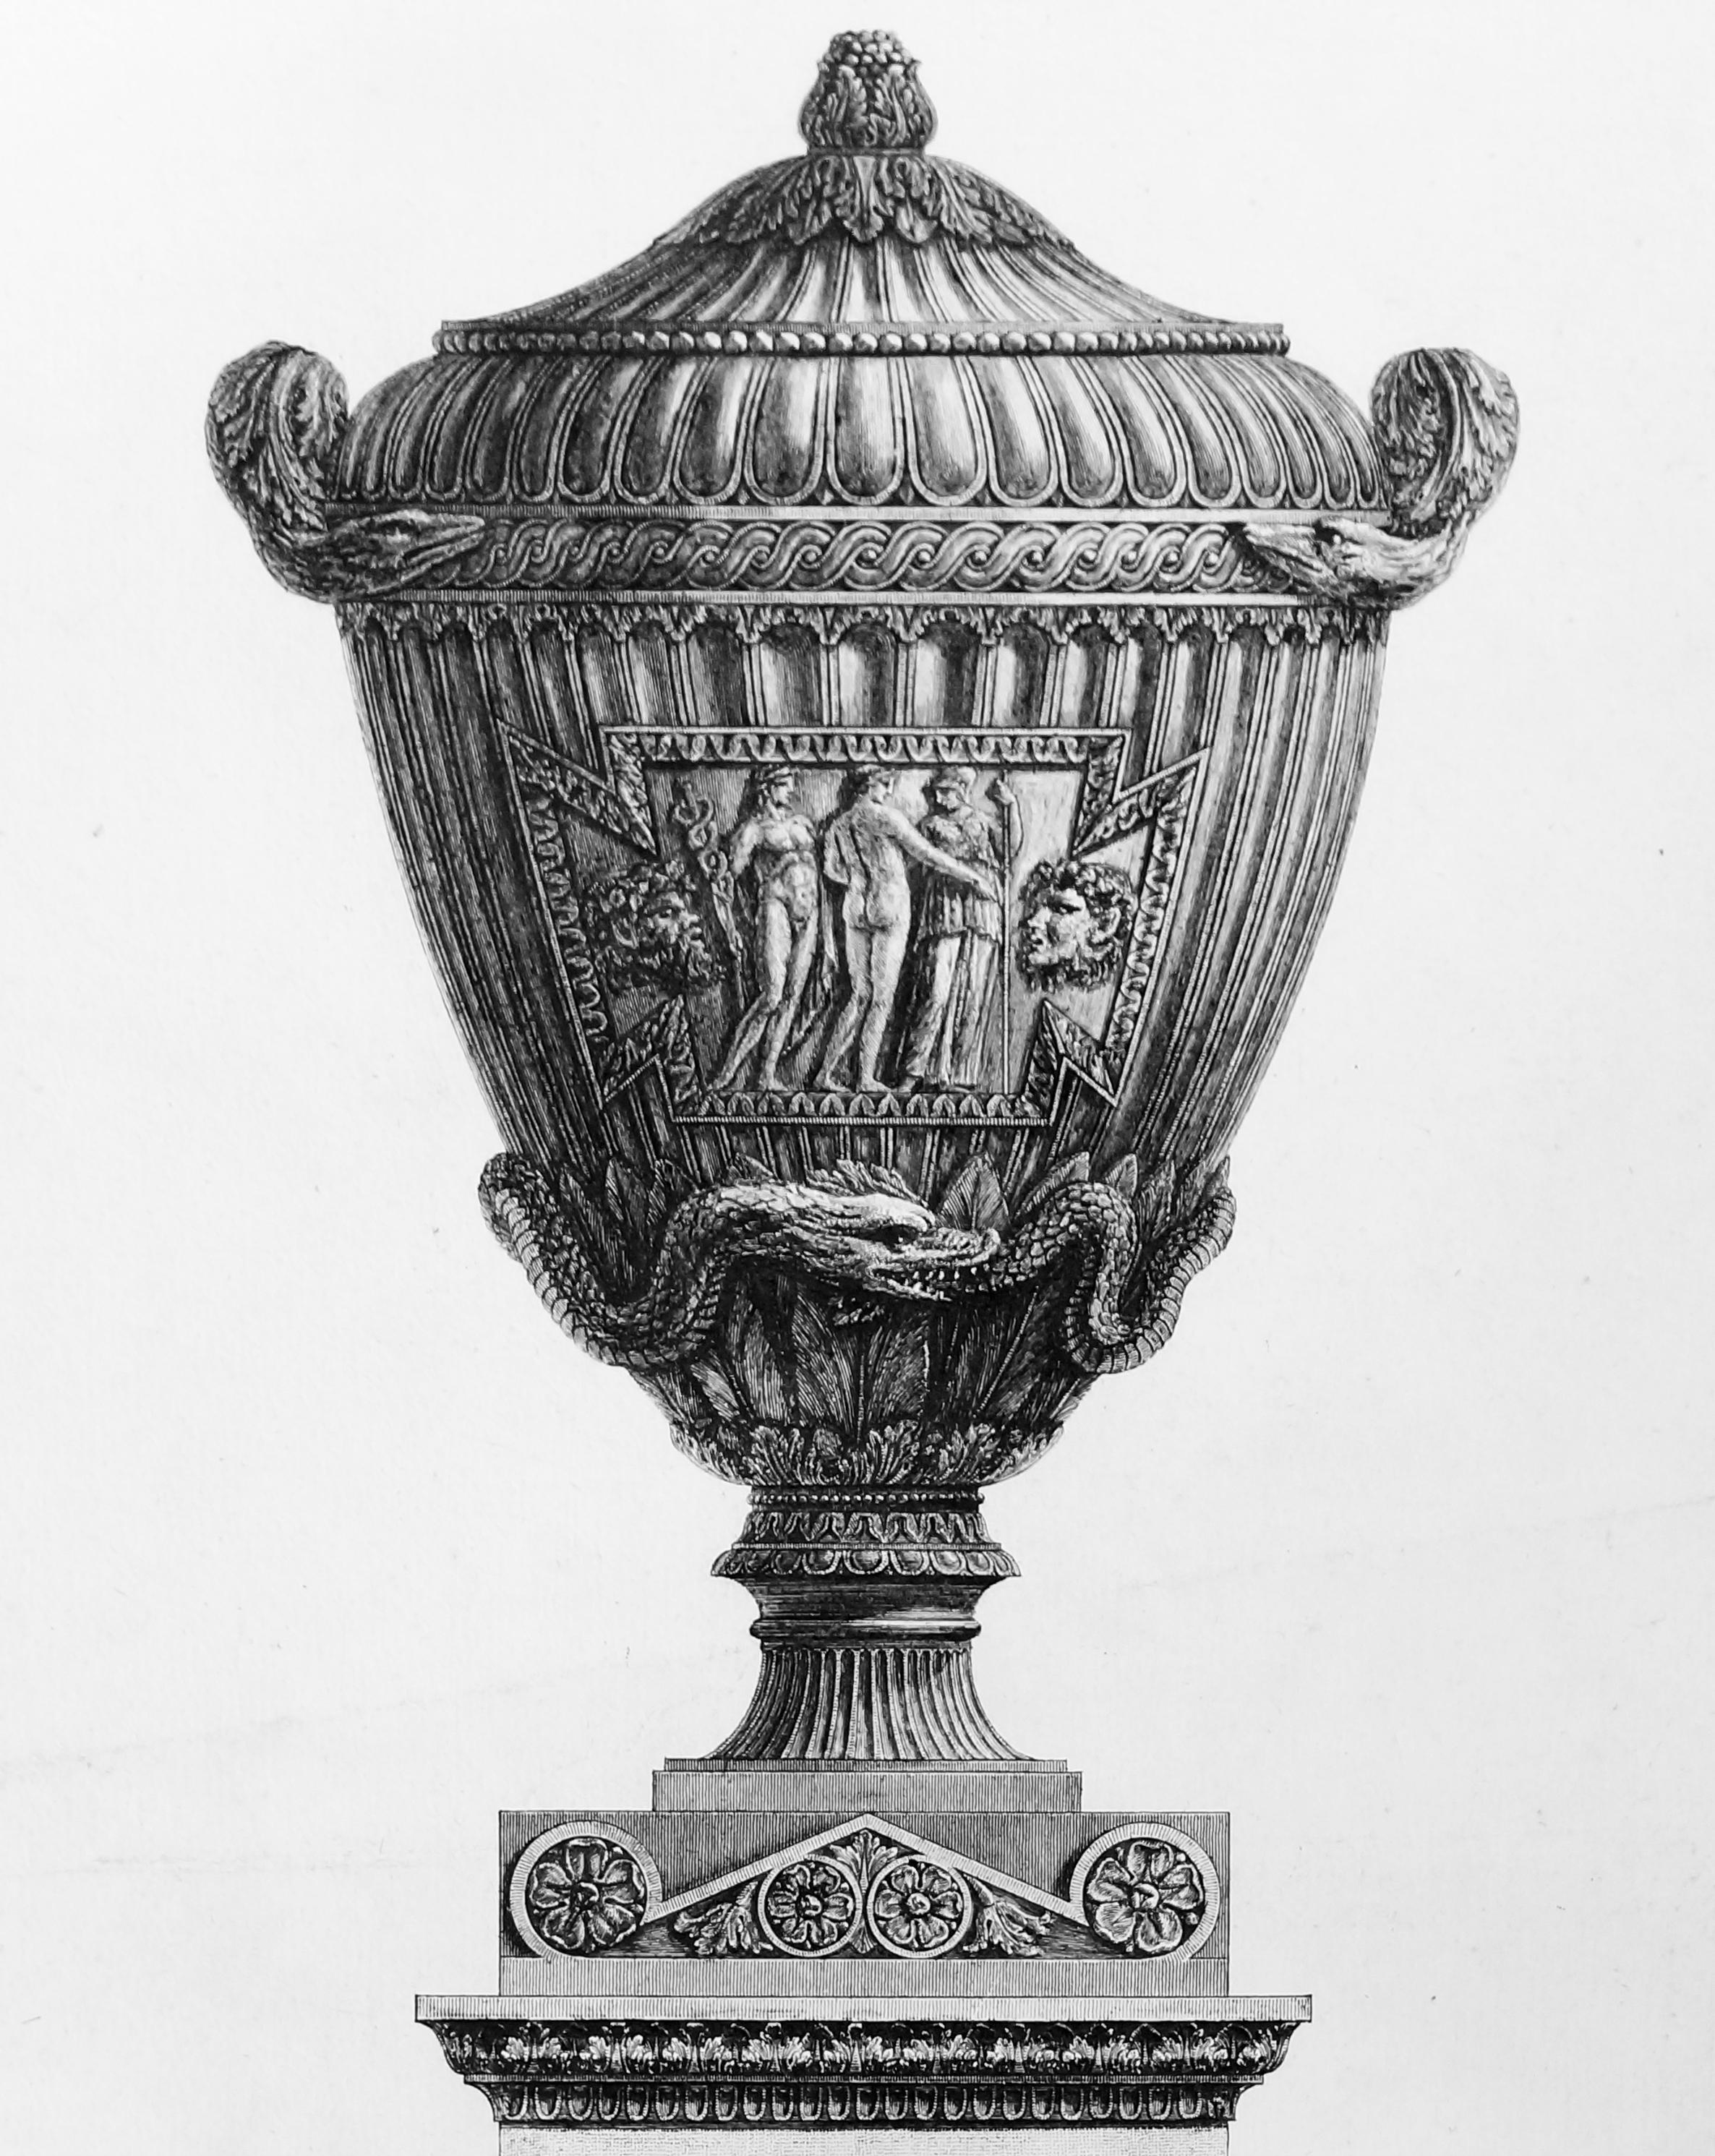 Vasi Antichi di Marmo Eccellentemente Scolpiti... - Etching - 1778 - Print by Giovanni Battista Piranesi